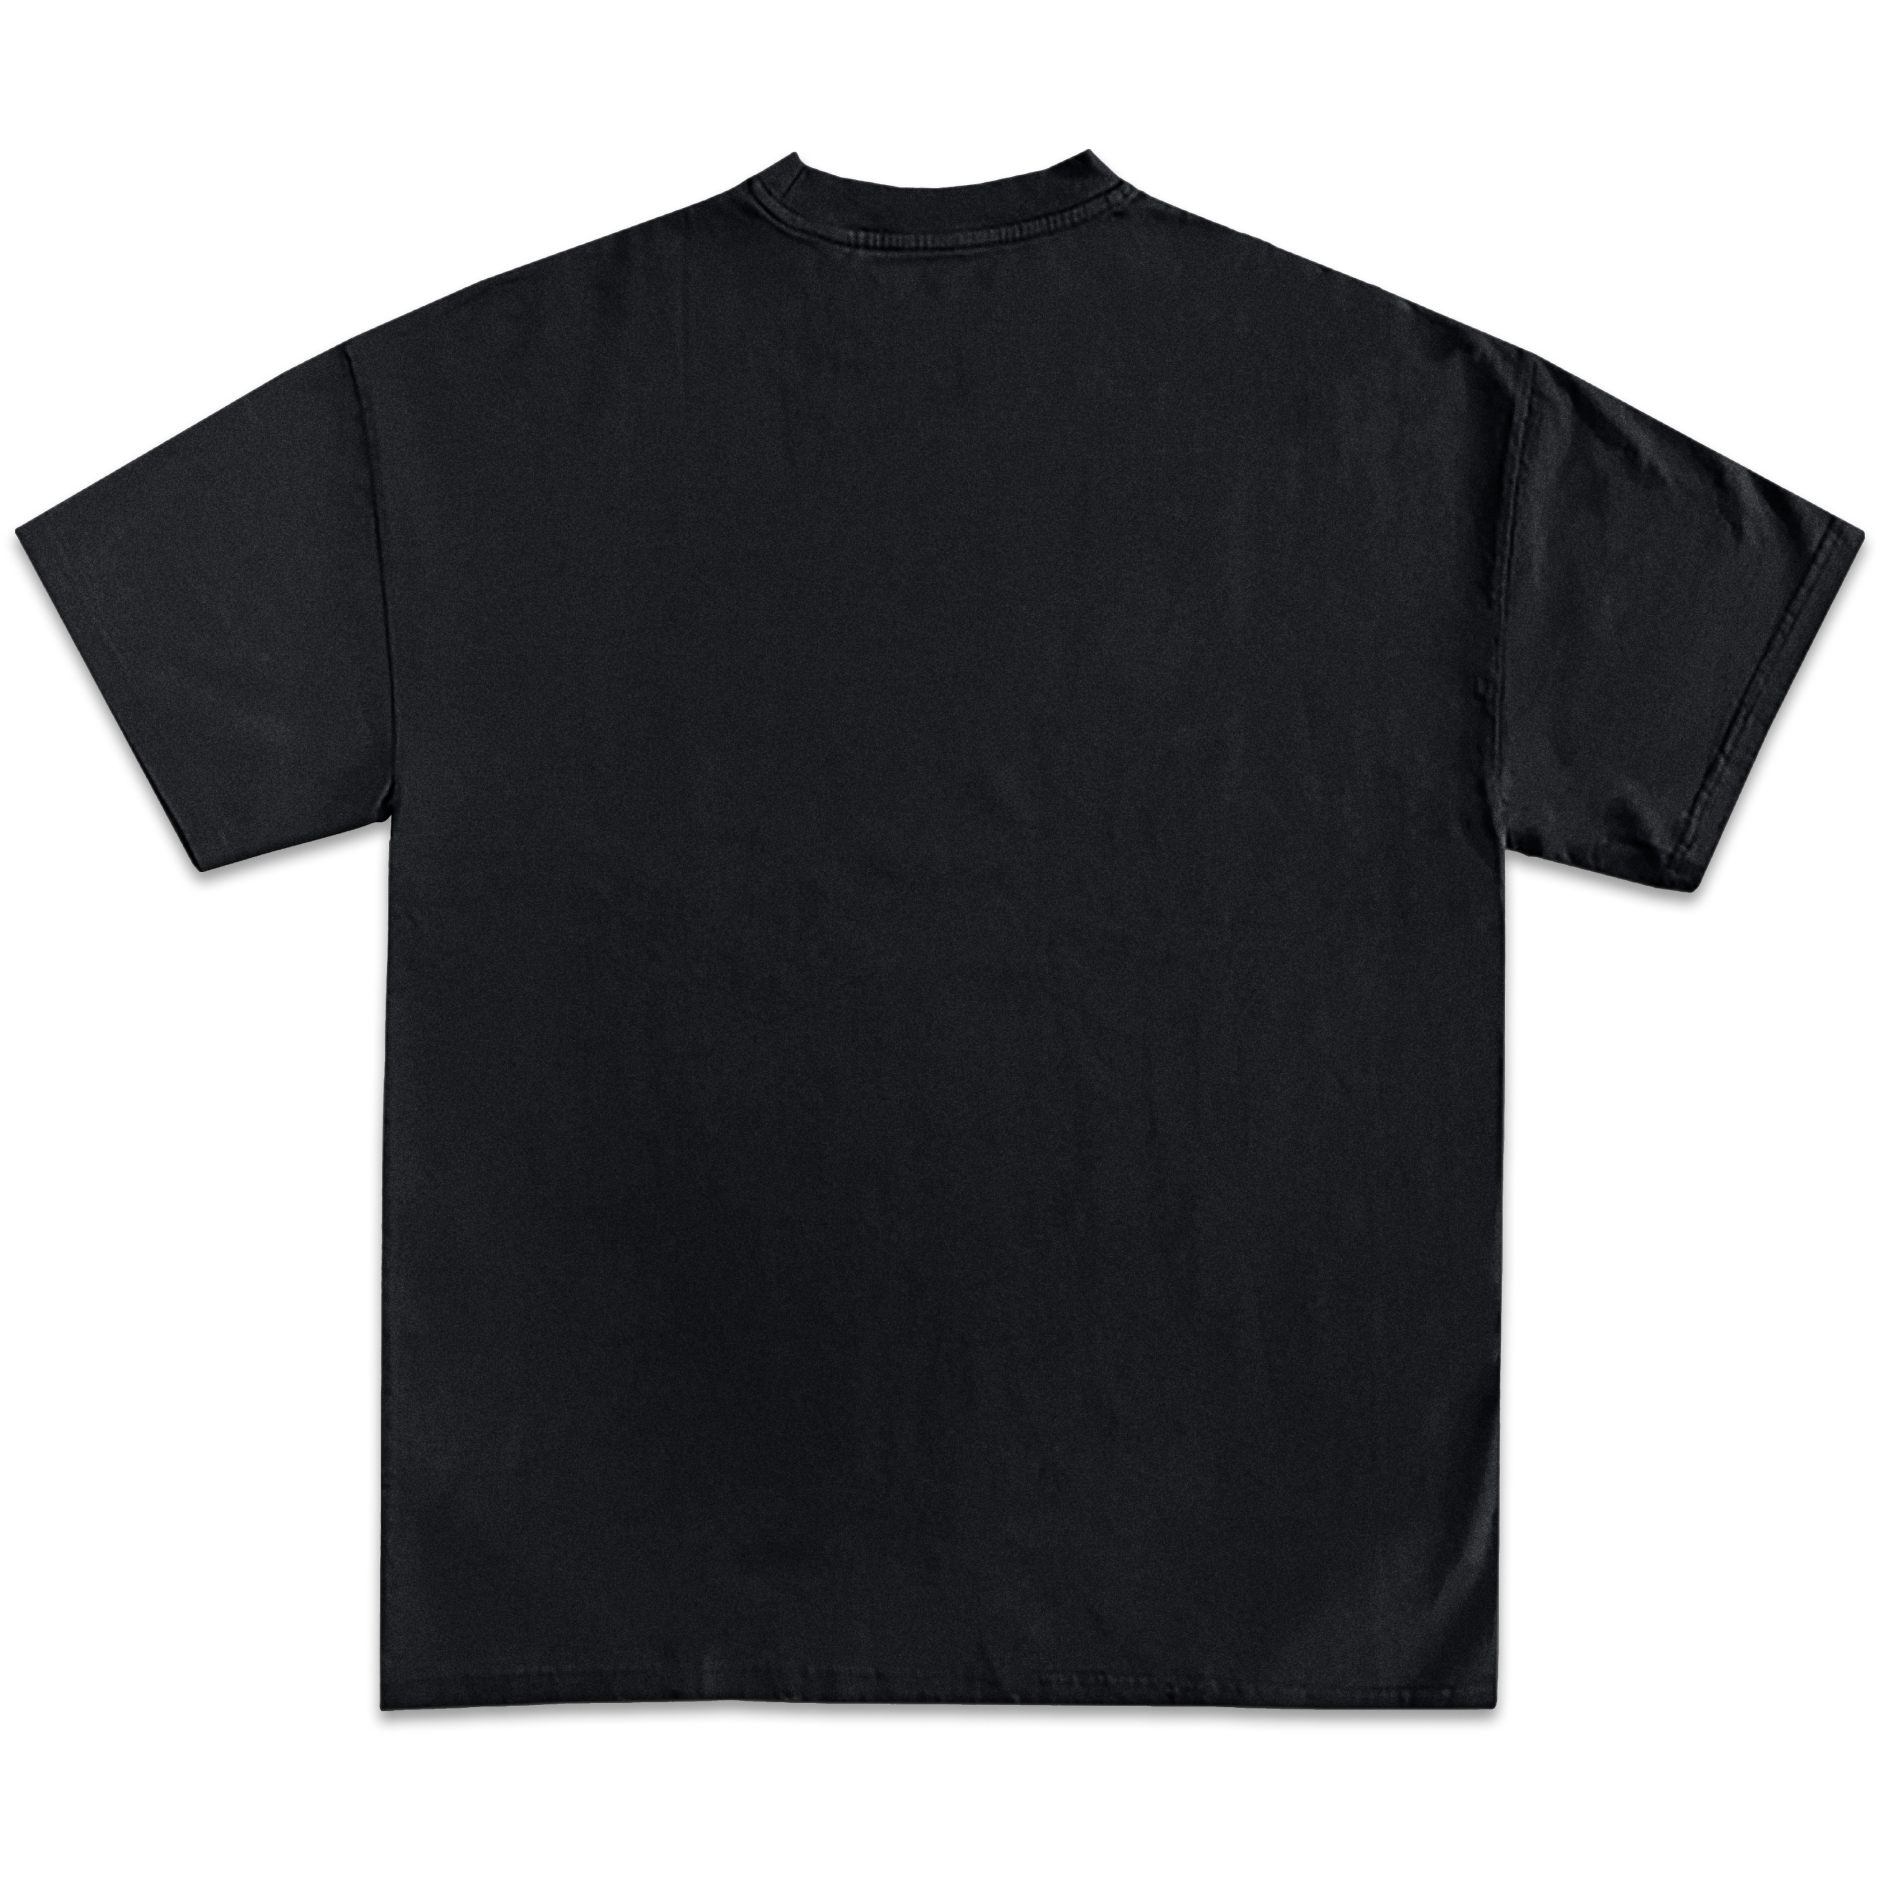 Gunna Jumbo Graphic T-Shirt